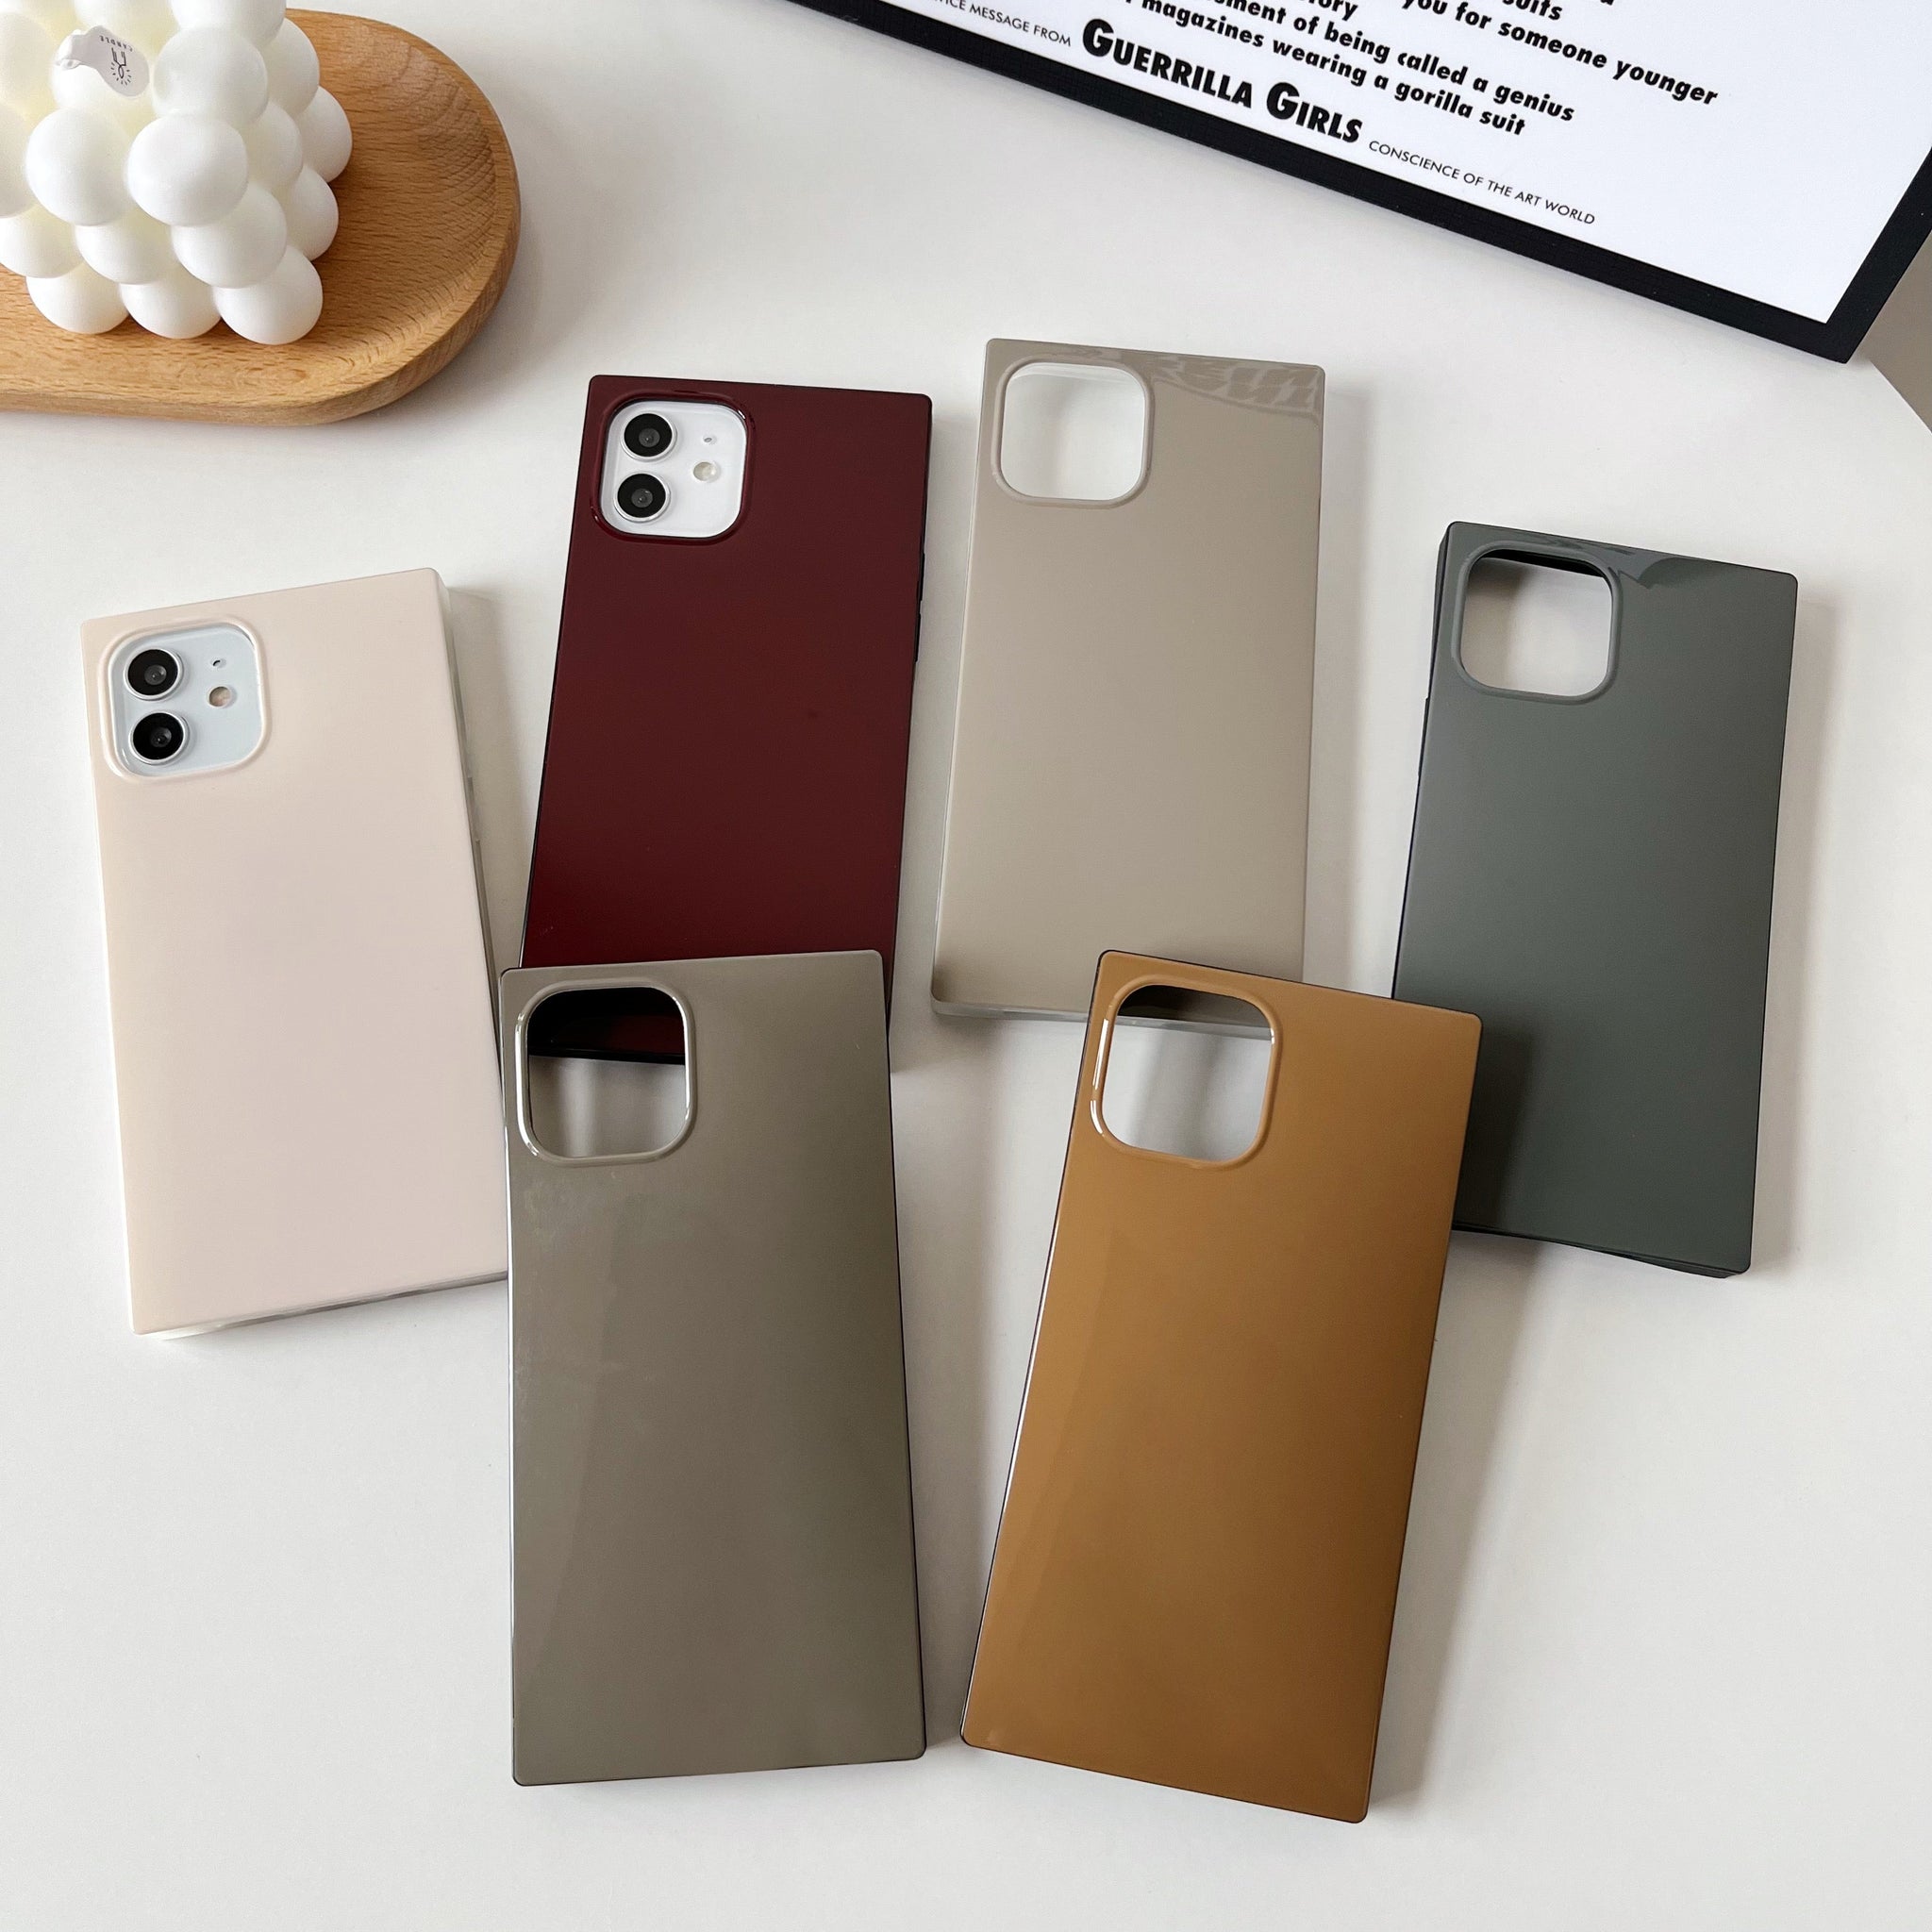 iPhone 11 Pro Max Case Square Neutral Plain Color (Deep Rouge)